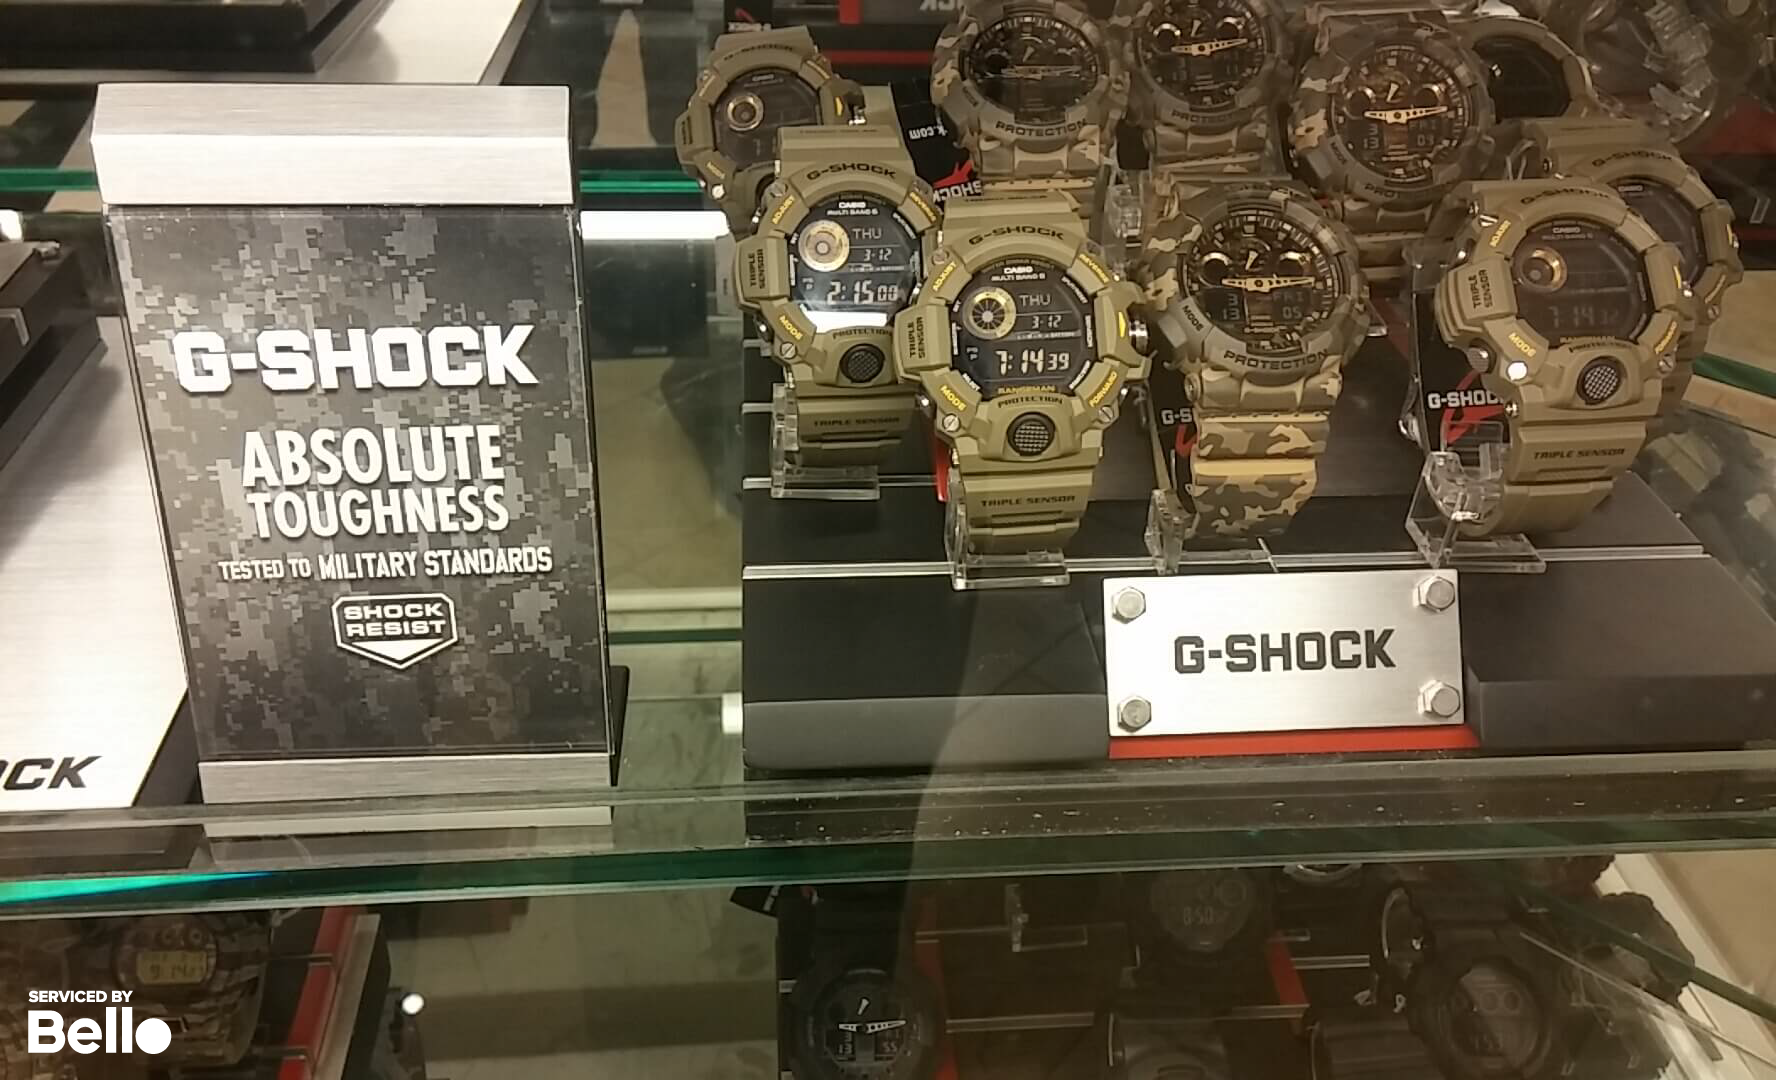 Top đồng hồ G-Shock tốt nhất dành cho quân đội tầm giá 2,5 triệu đồng.